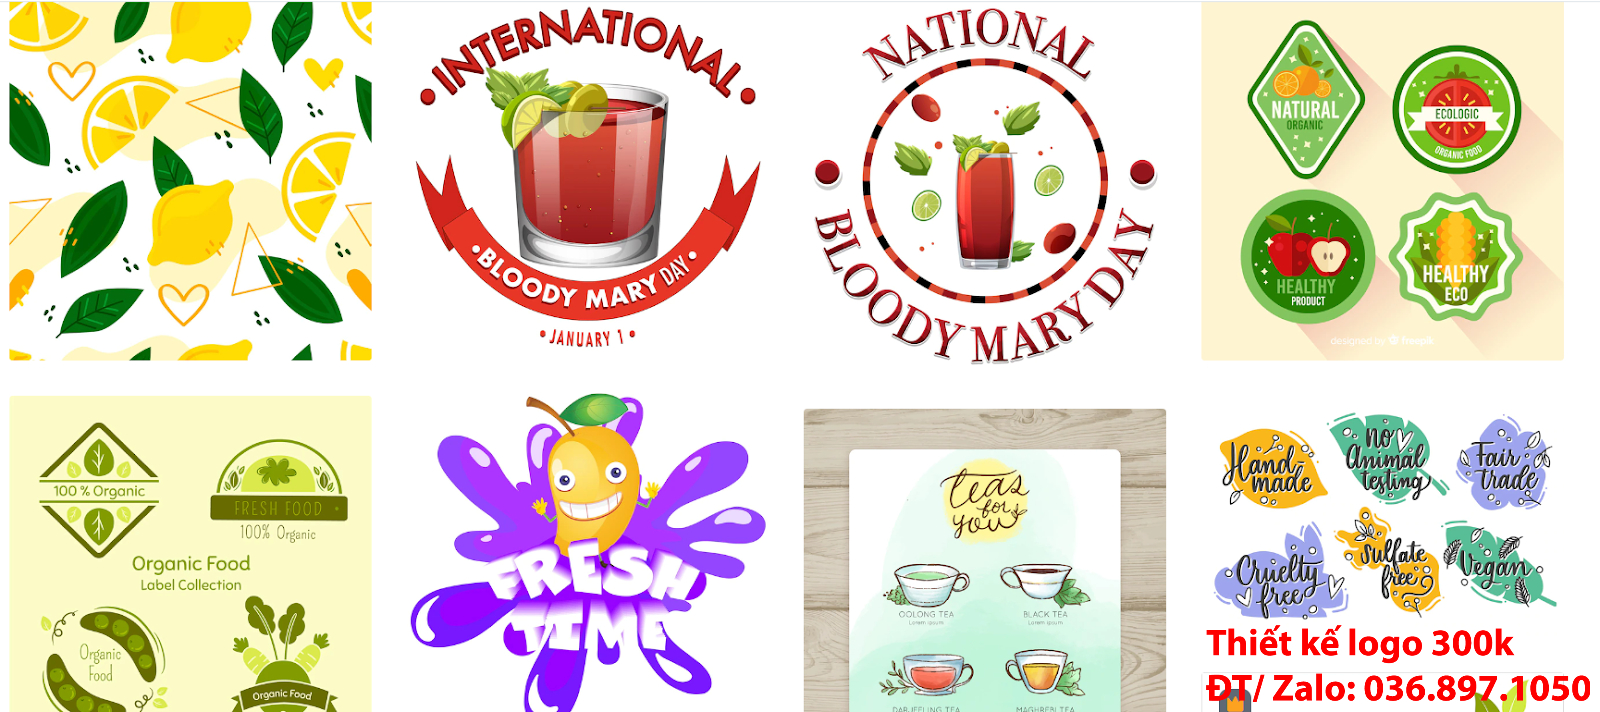 Nhận tạo Mẫu logo quán trà chanh đẹp miễn phí online cho các công ty tại khu vực TpHCM chuyên nghiệp uy tín nhất